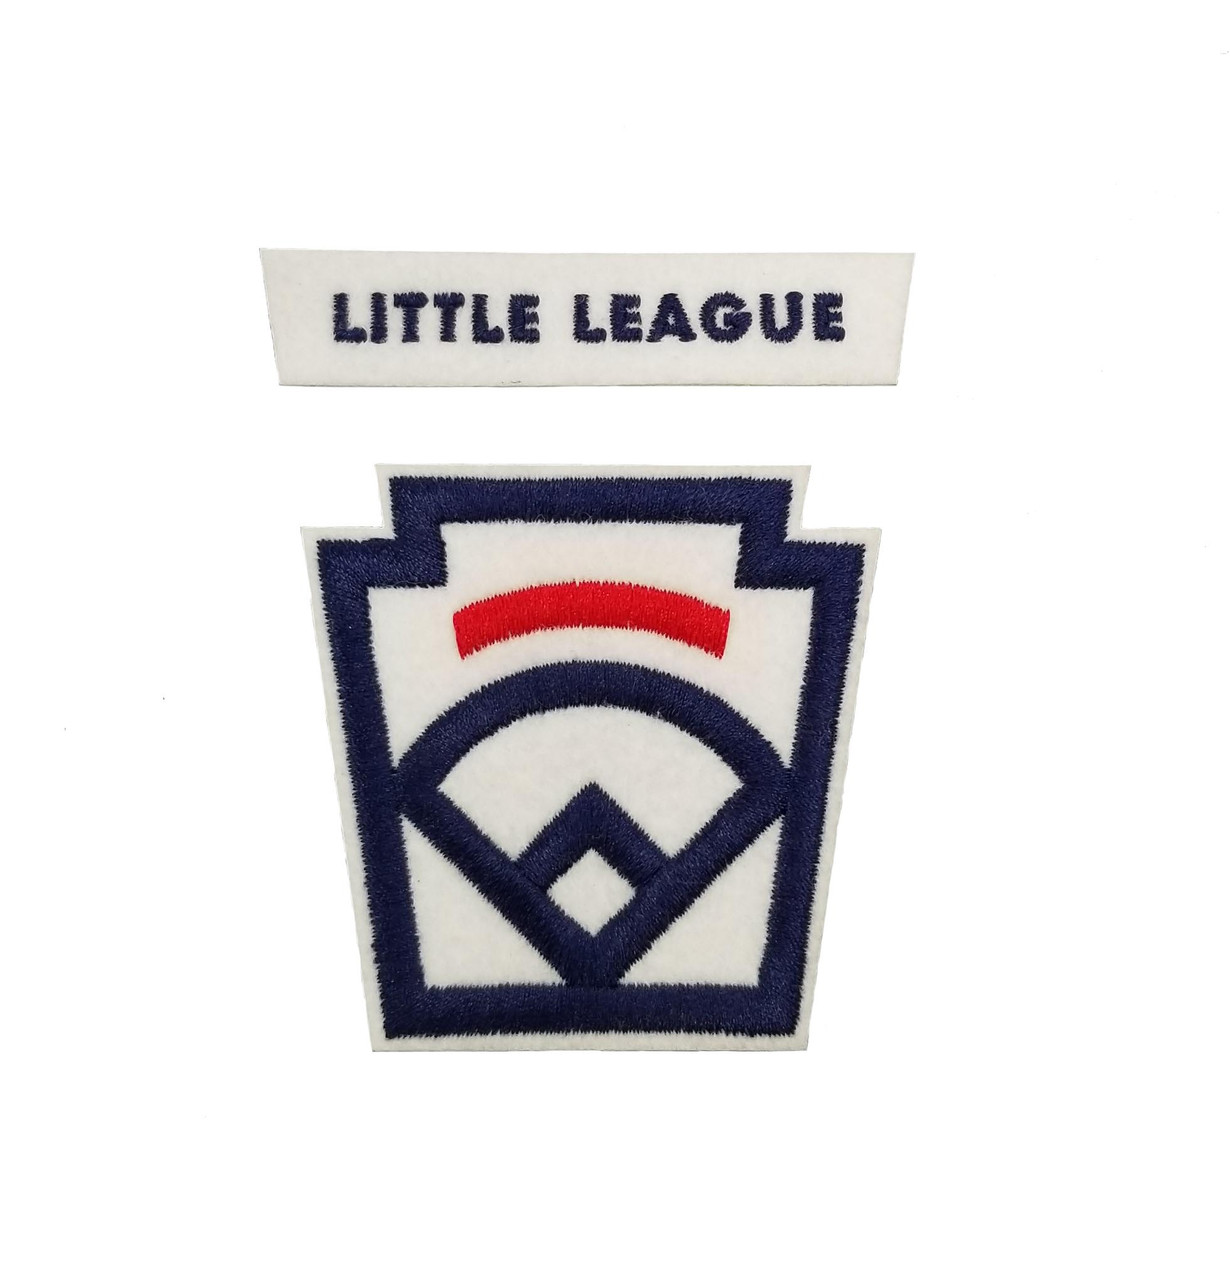 League Essentials - Patches - Little League Official Store